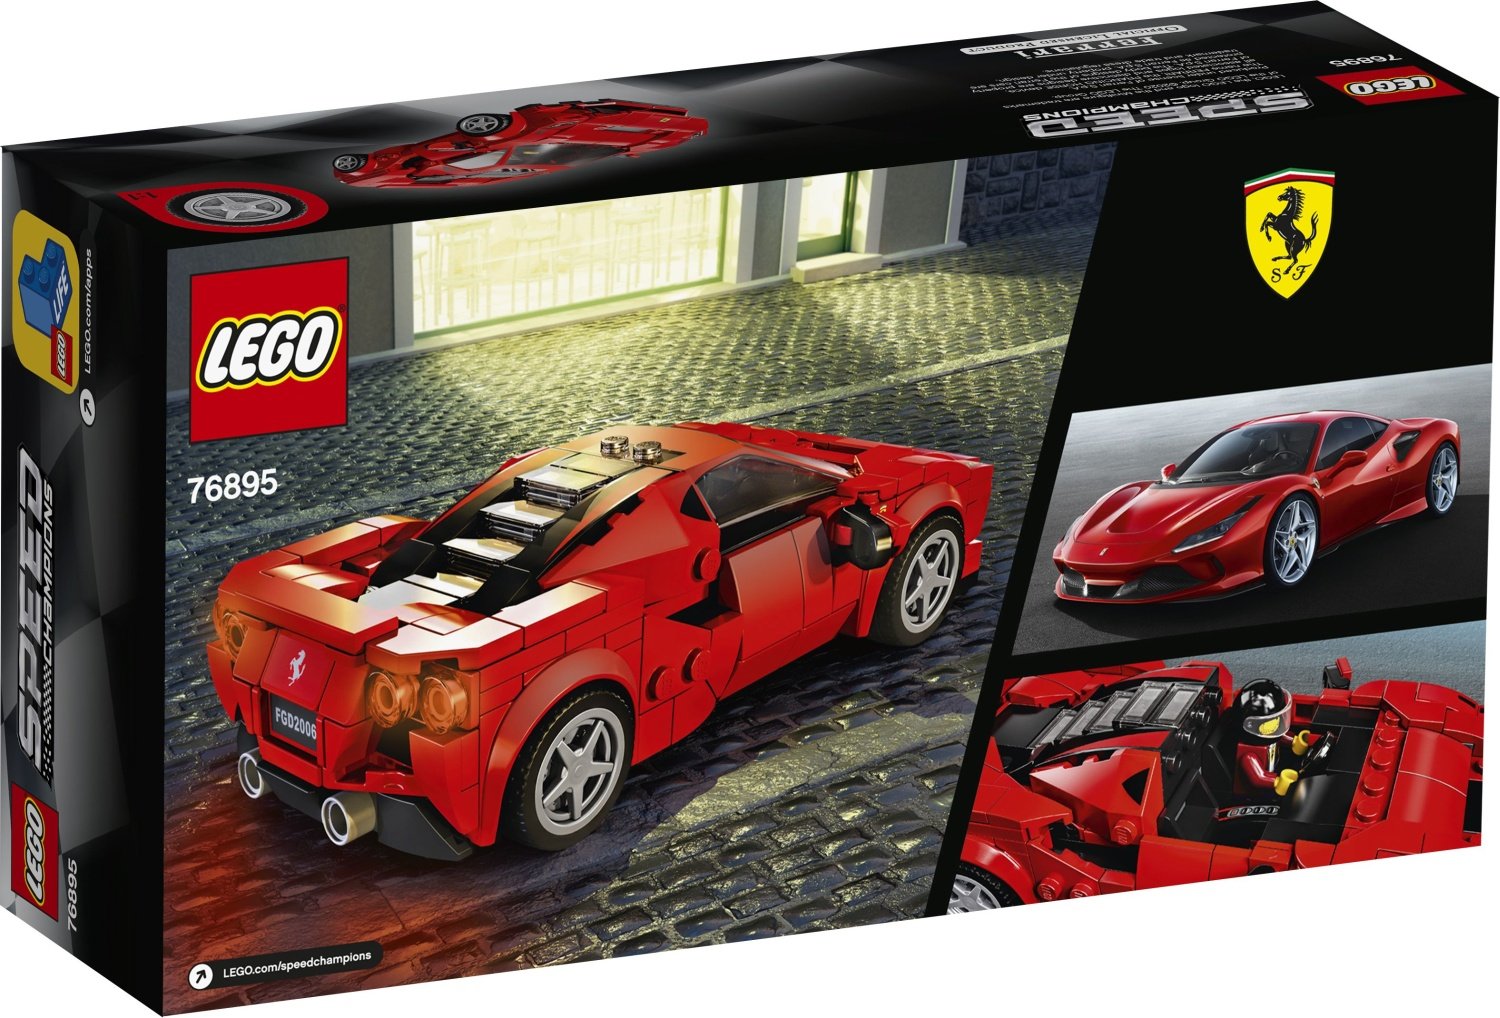 Immagini dei nuovi set LEGO Speed Champions previsti per la prima metà